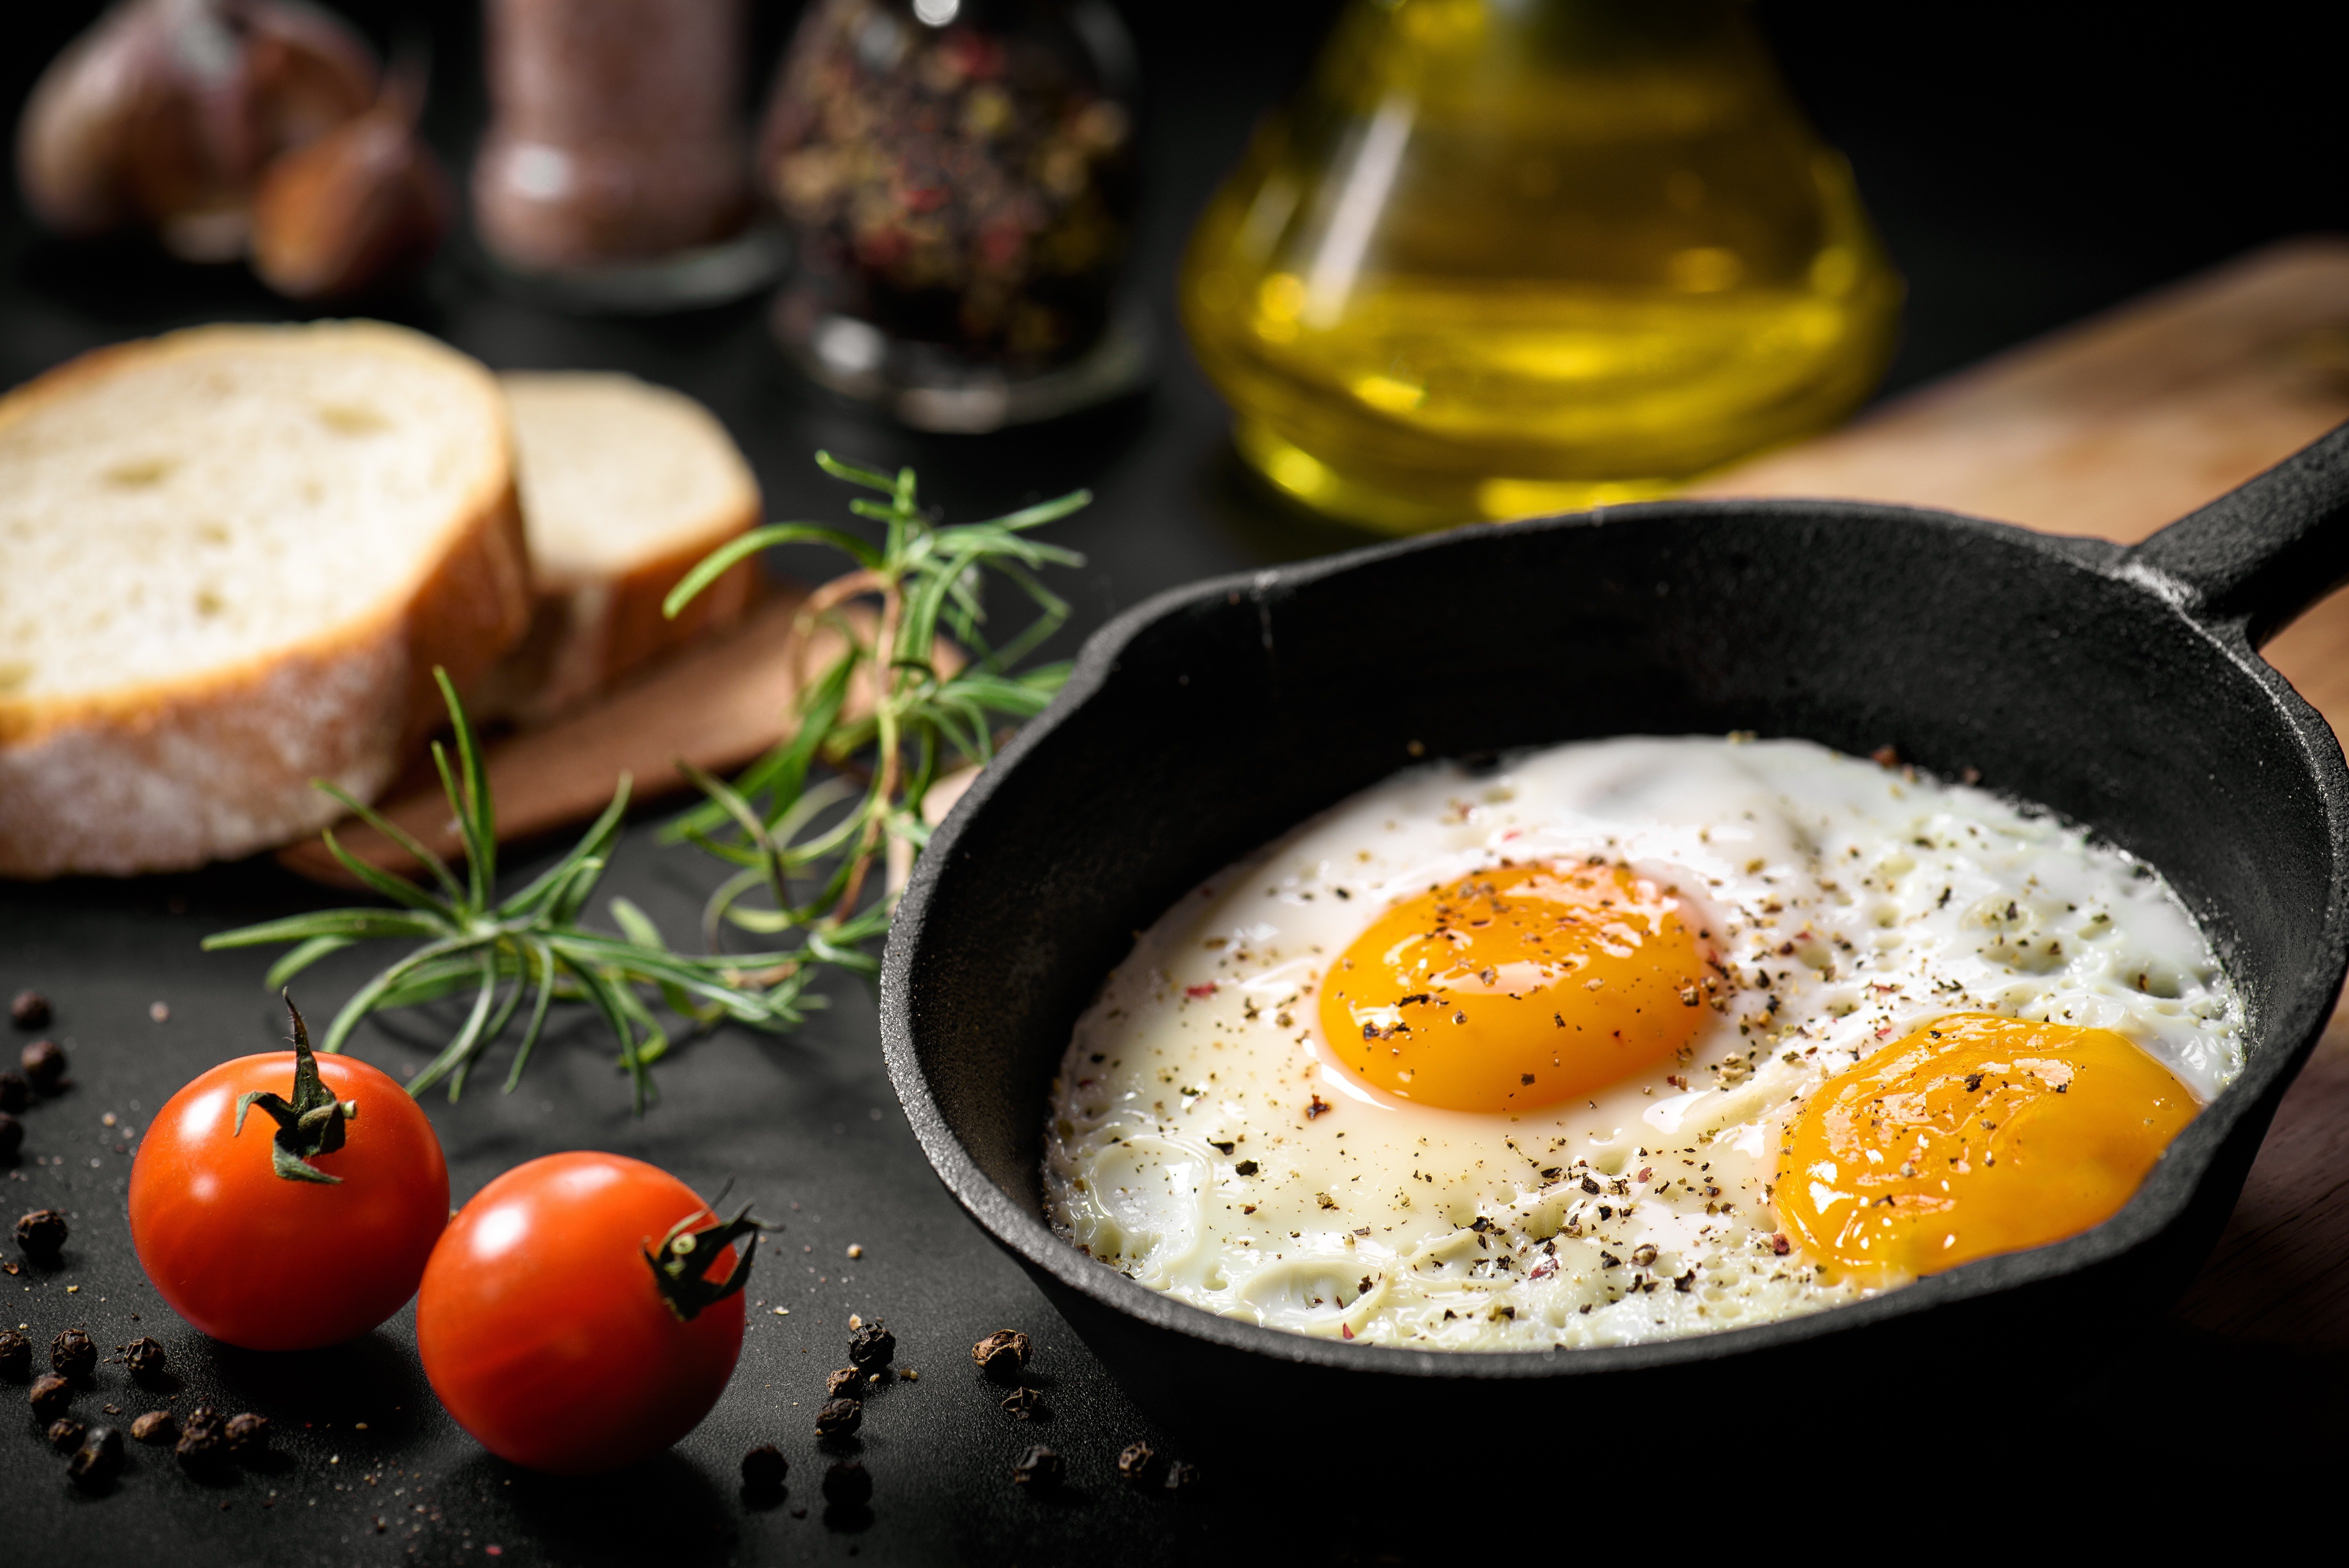 Breakfast - Eggs